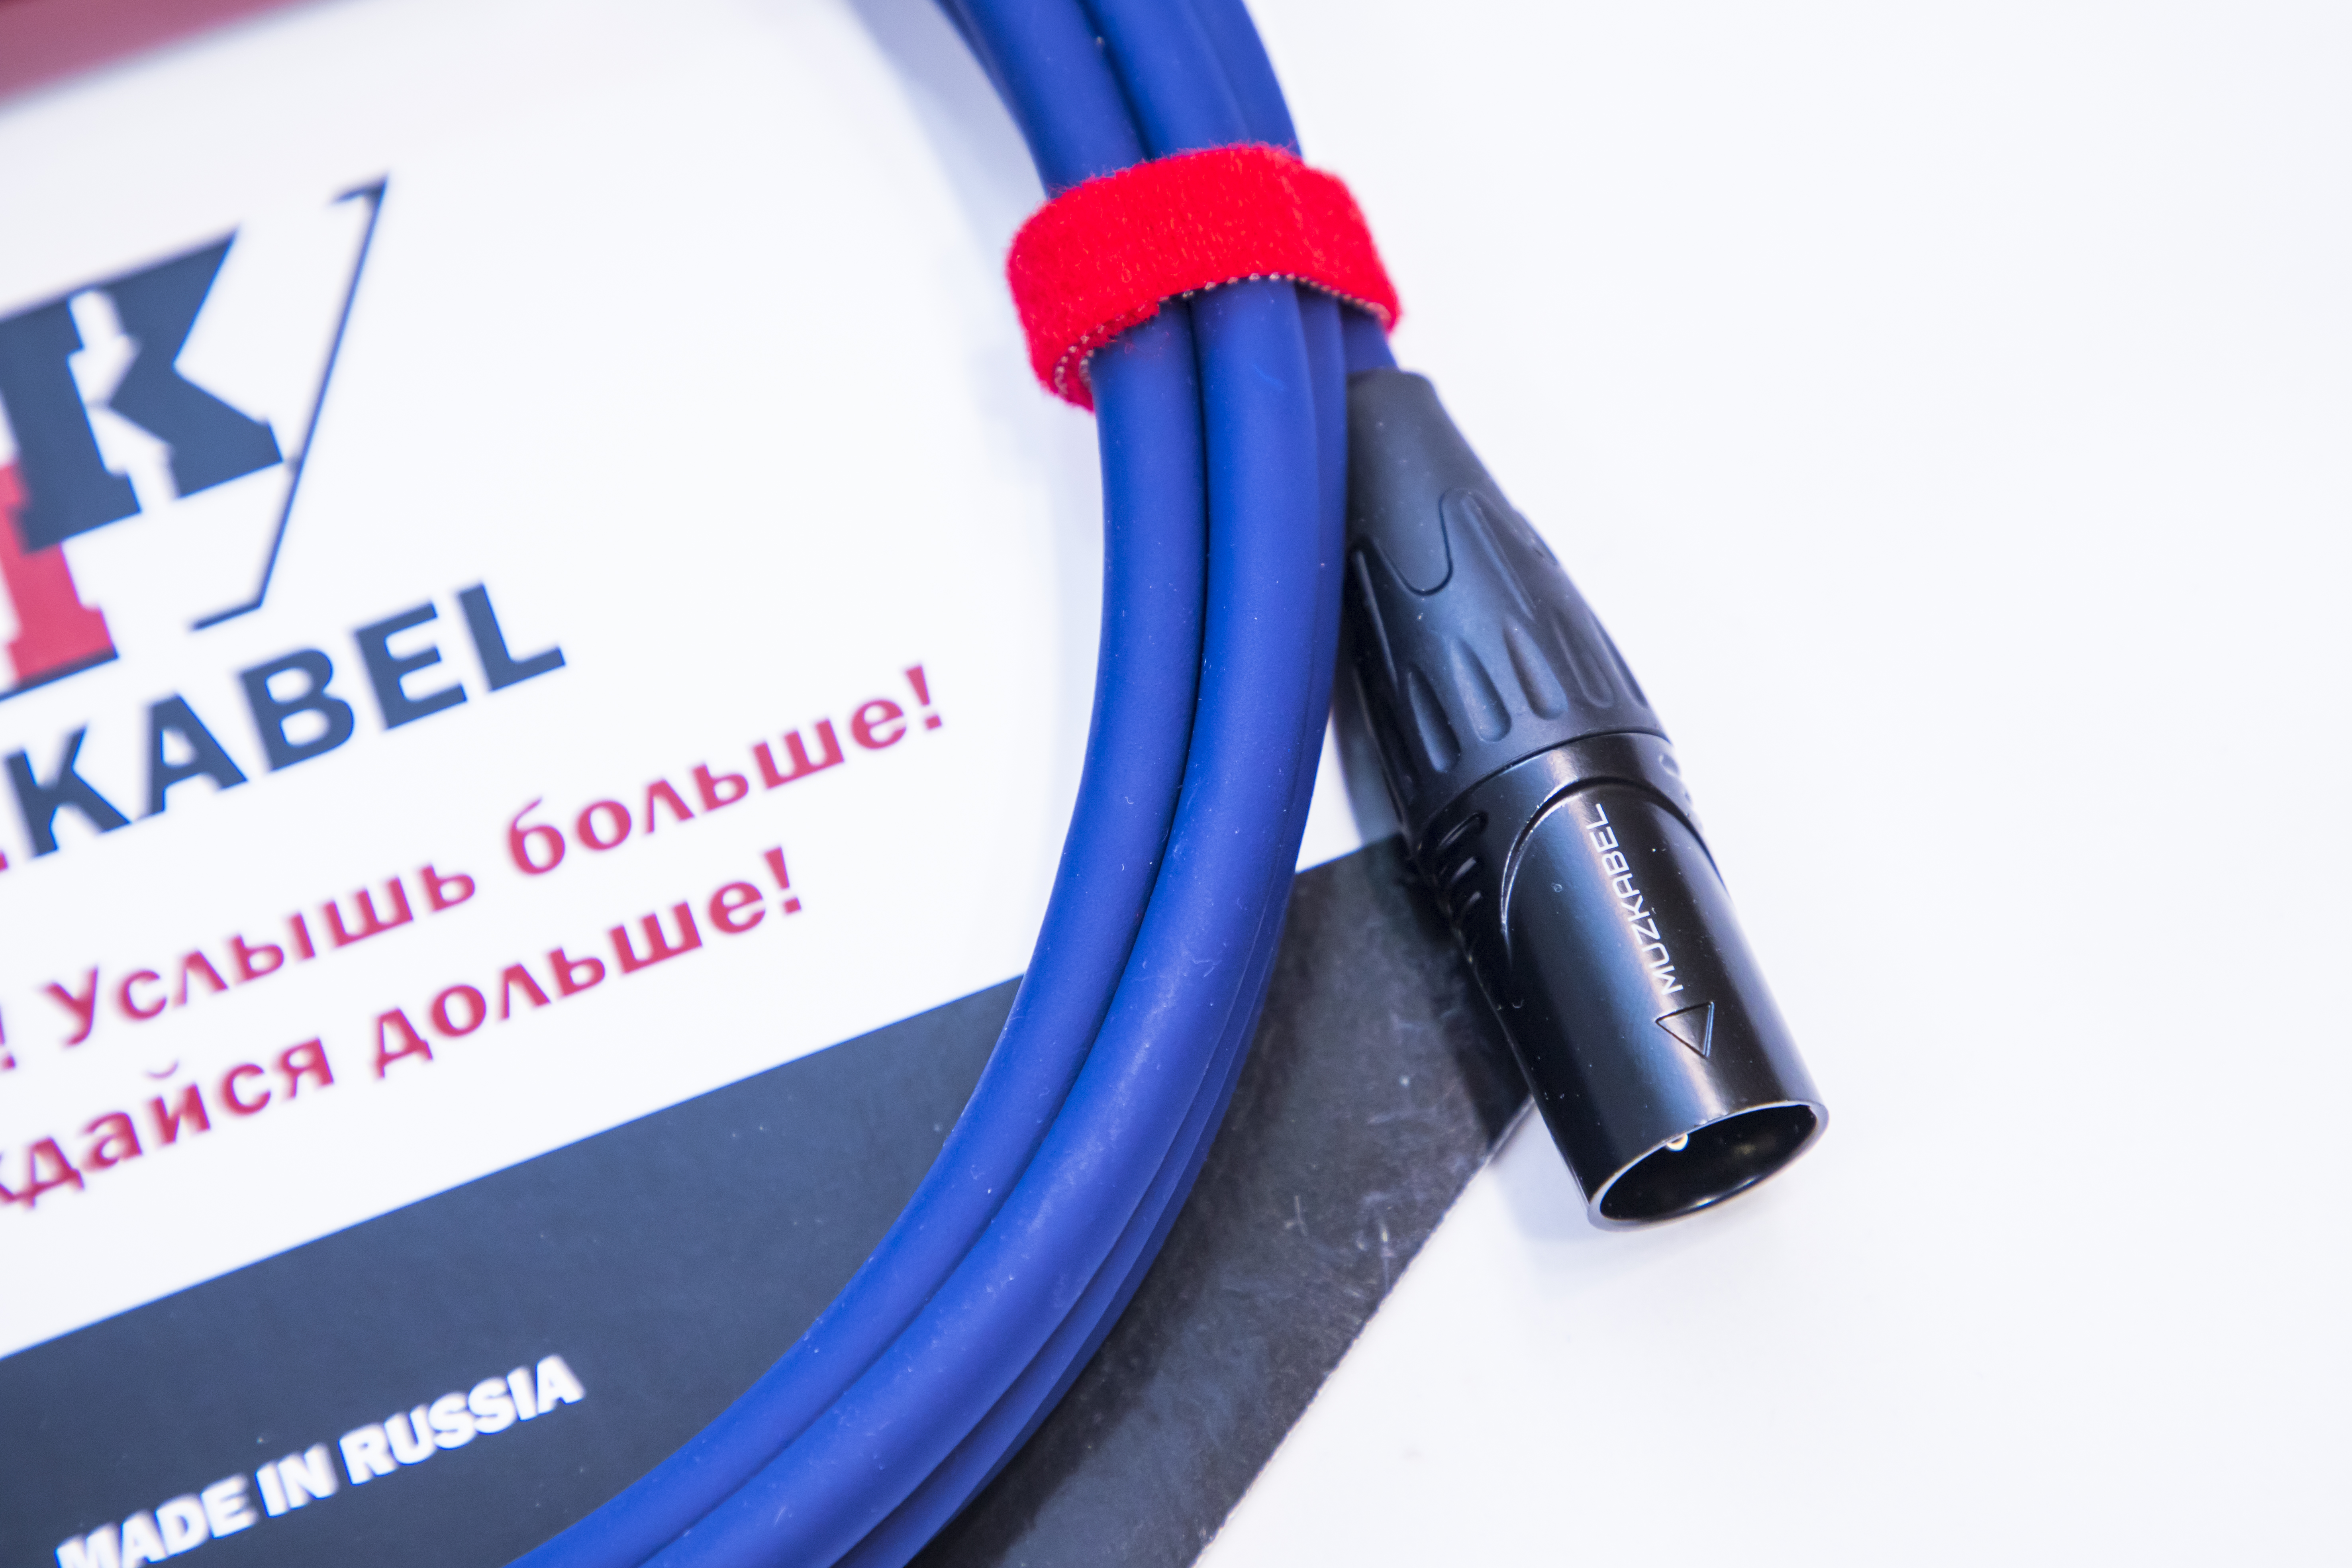 Гитарный кабель MUZKABEL AXFMK1S - 6 метров, JACK (моно) - XLR (папа)